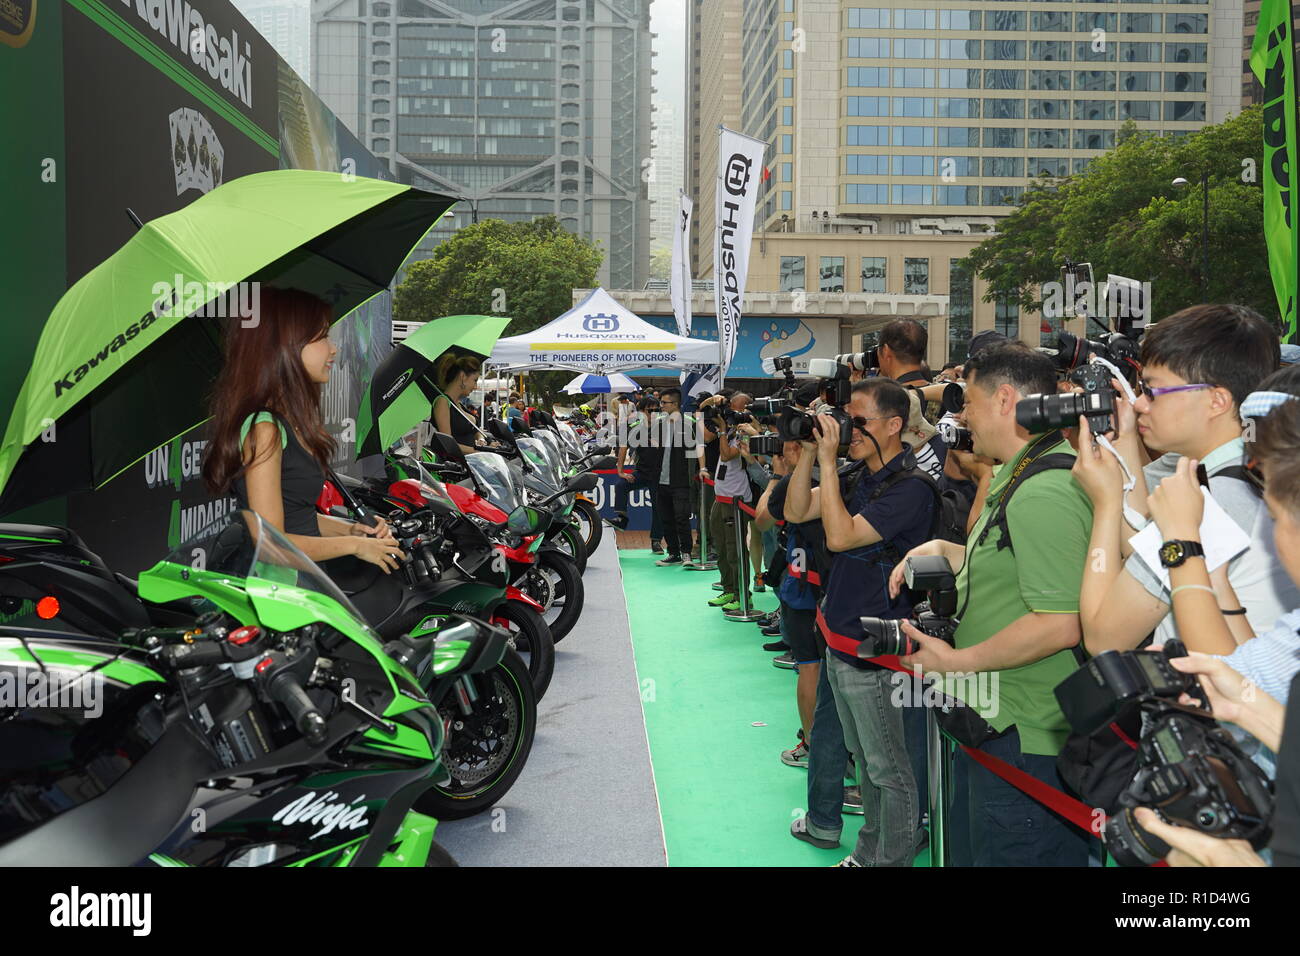 Un modello di motocicli Kawasaki pone di fronte ai fotografi a Motorcycle Show 2018 presso la centrale di Hong Kong. Il "MOTOCICLO SHOW' nel centro di HONG KONG si tiene ogni anno nel mese di ottobre o novembre. Si tratta di una mostra dedicata a tutte le forme di 2 ruote di divertimento con il club, negozi, importatori, dipartimenti governativi visualizzando le loro moto in una atmosfera di carnevale. Foto Stock